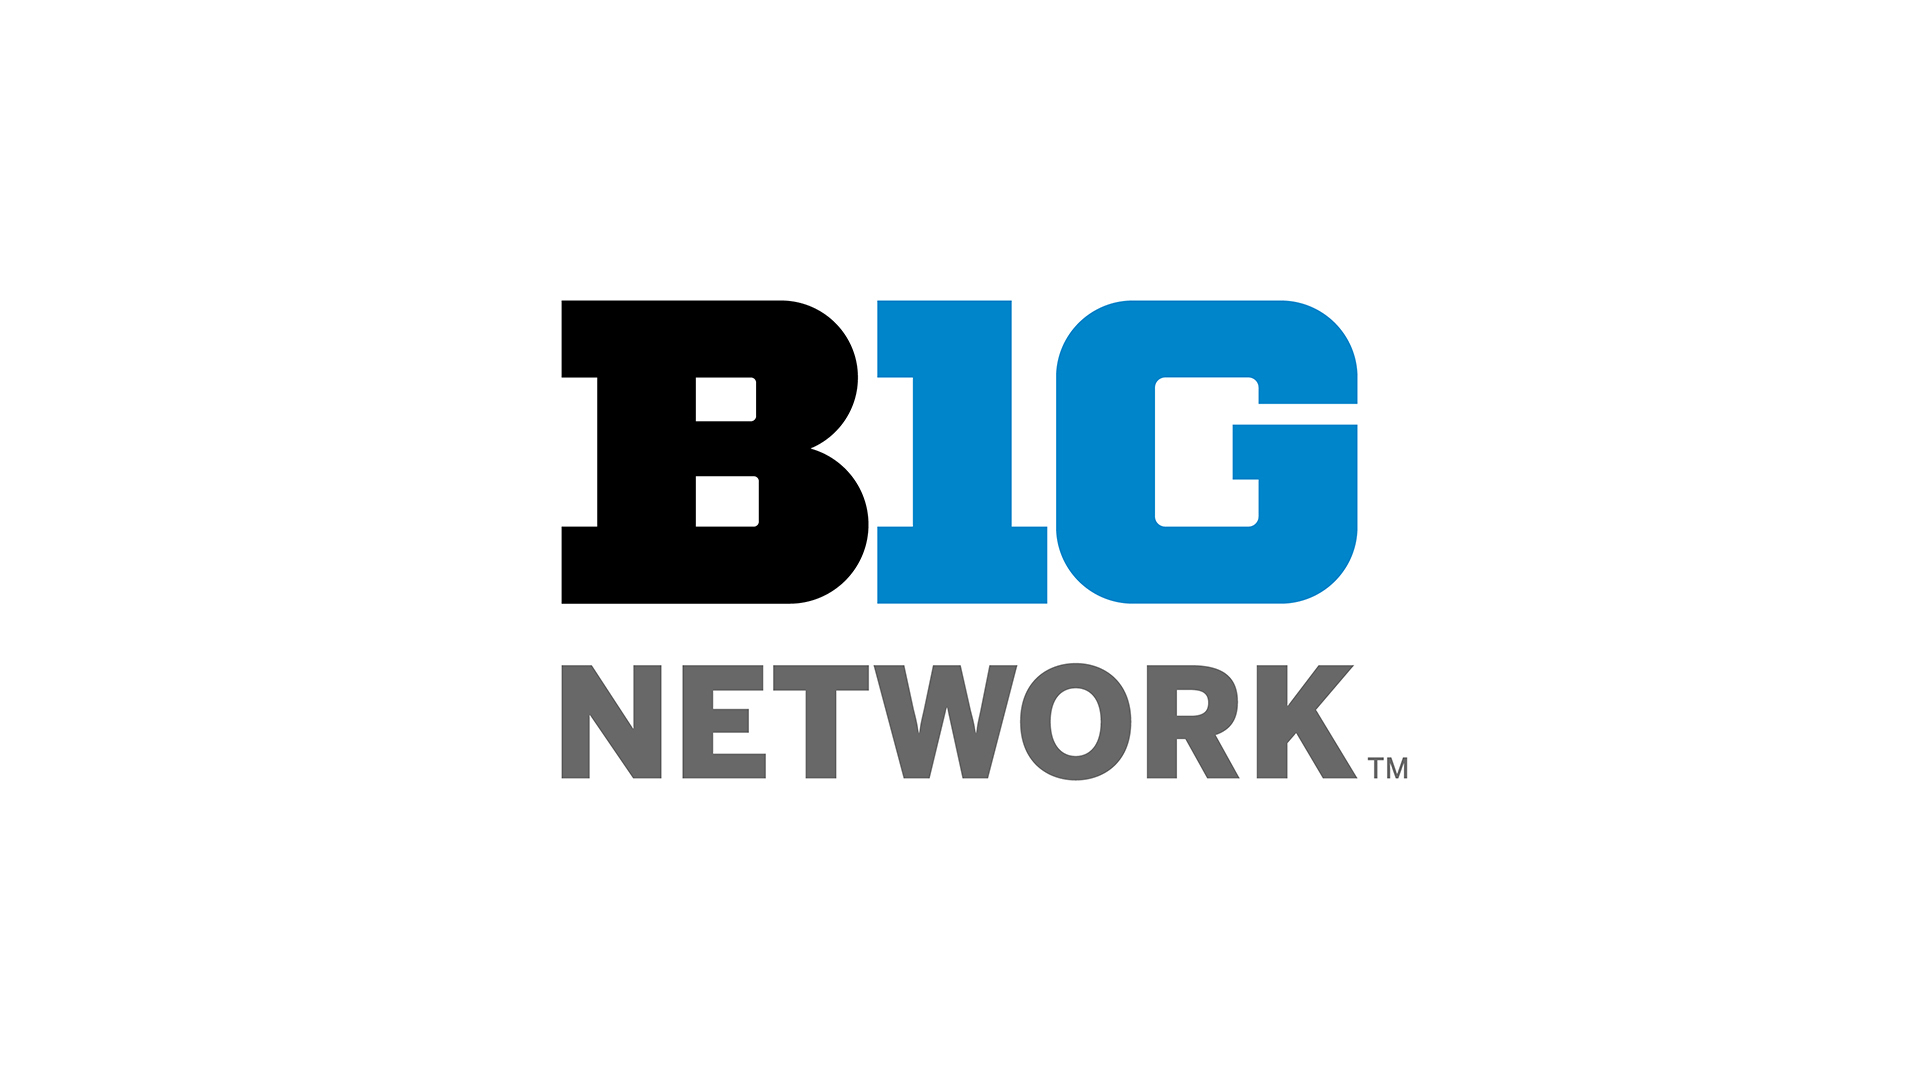 Big Ten Network Announces 2021 Big Ten Wrestling Schedule - Big Ten Network